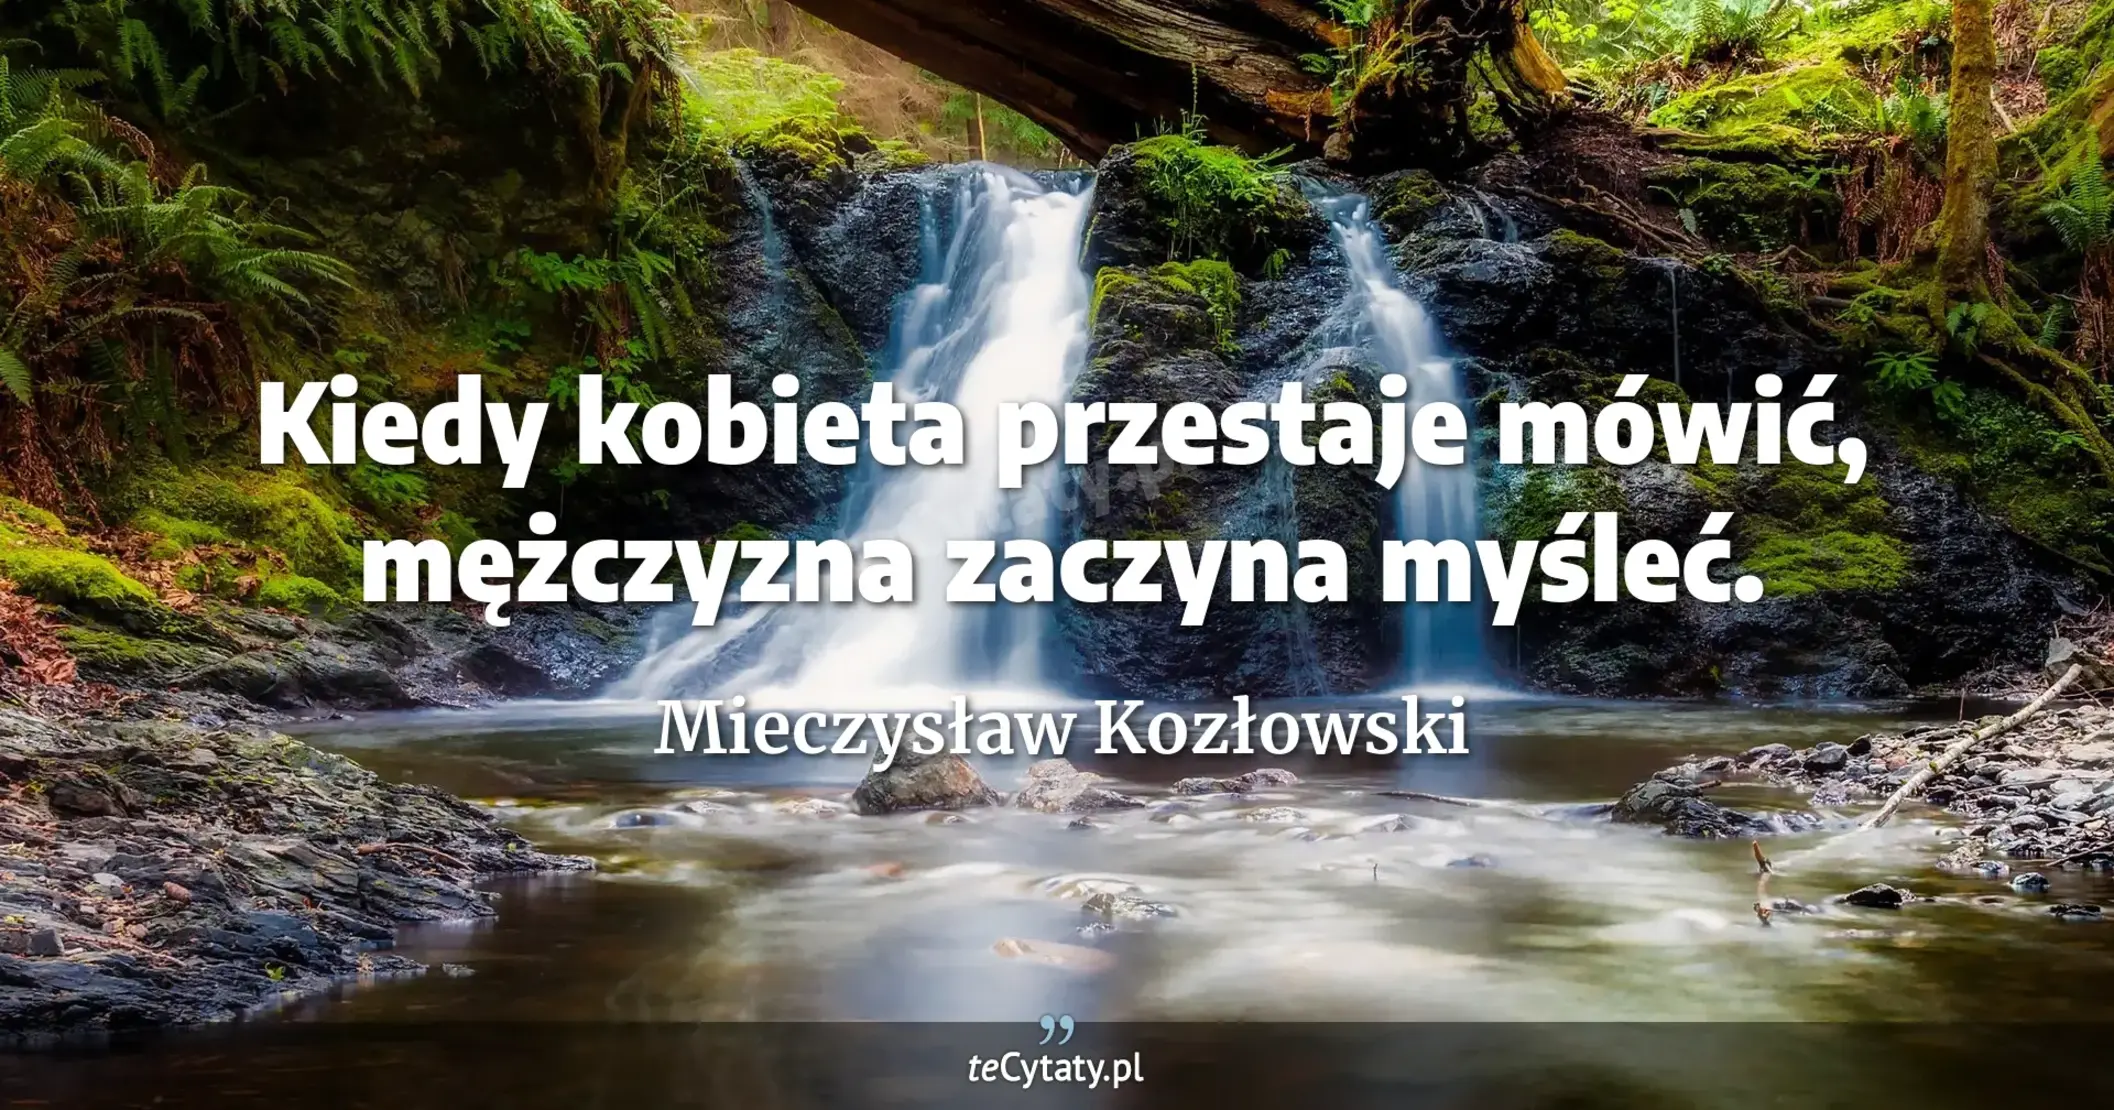 Kiedy kobieta przestaje mówić, mężczyzna zaczyna myśleć. - Mieczysław Kozłowski